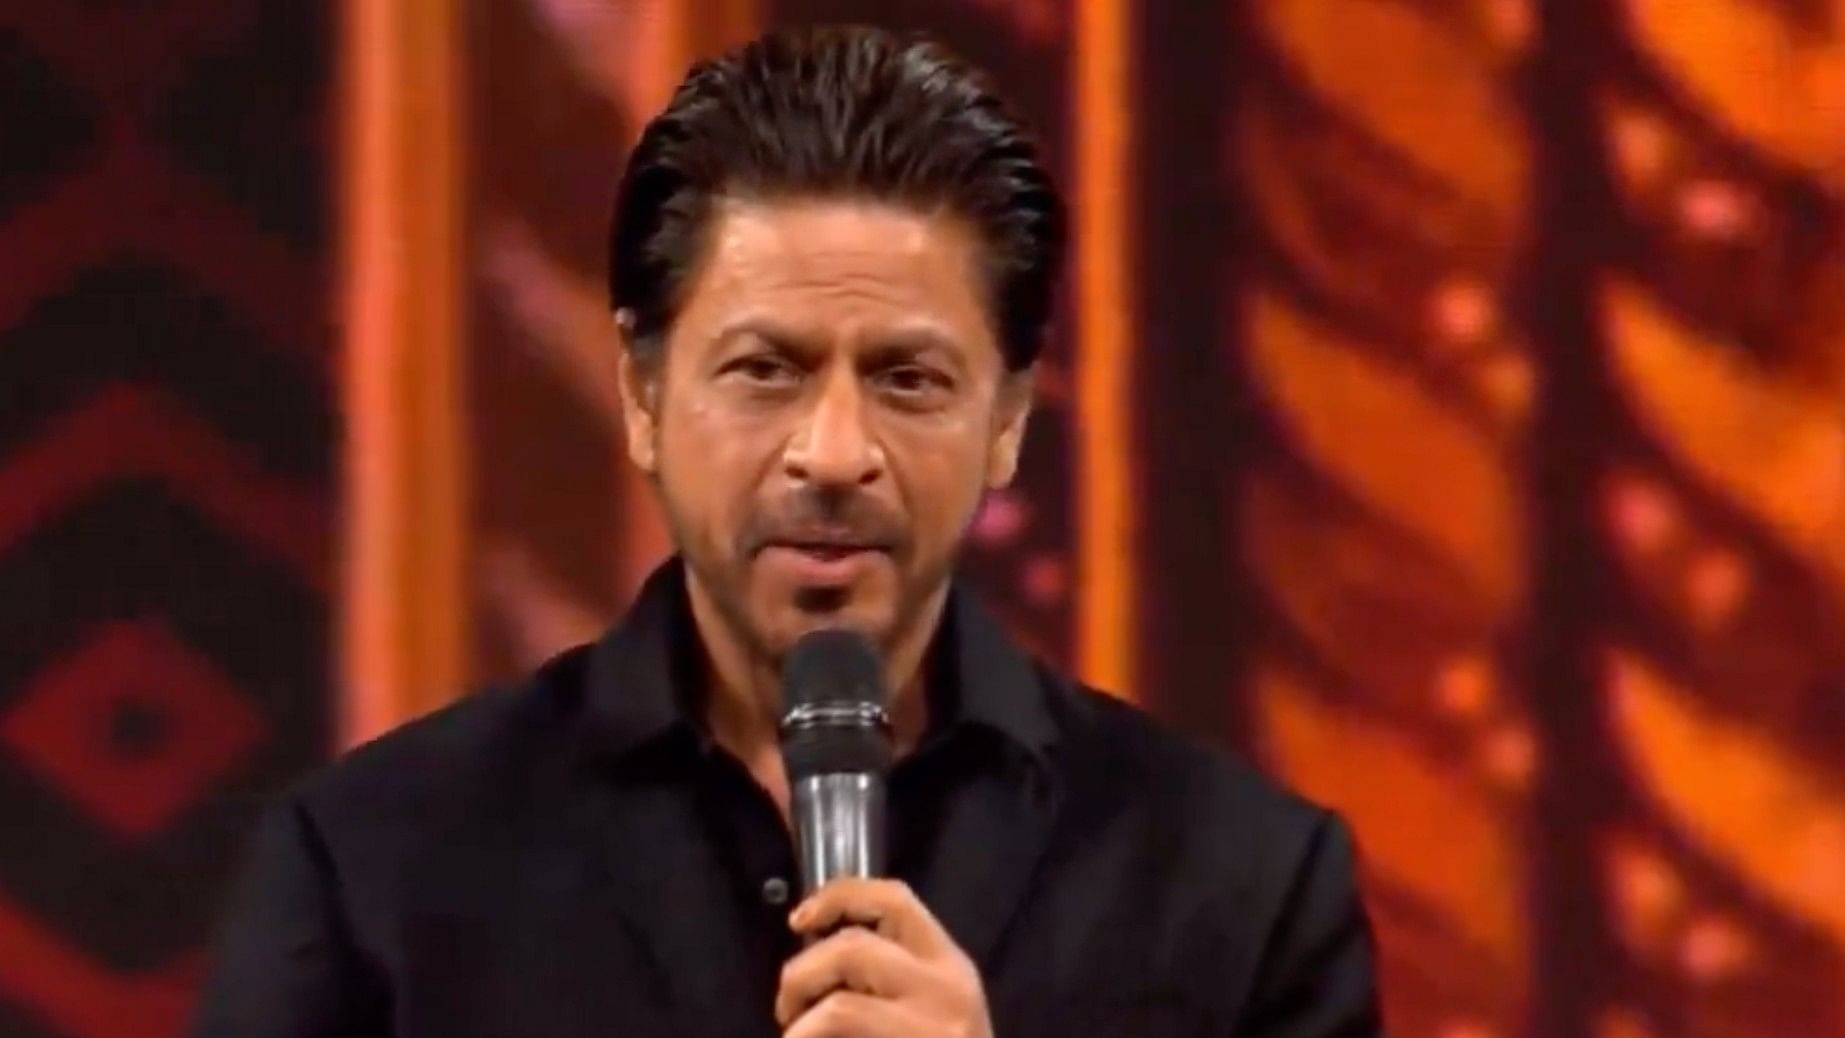 <div class="paragraphs"><p>Shah Rukh Khan was back again in Jamnagar for an Ambani event.</p></div>